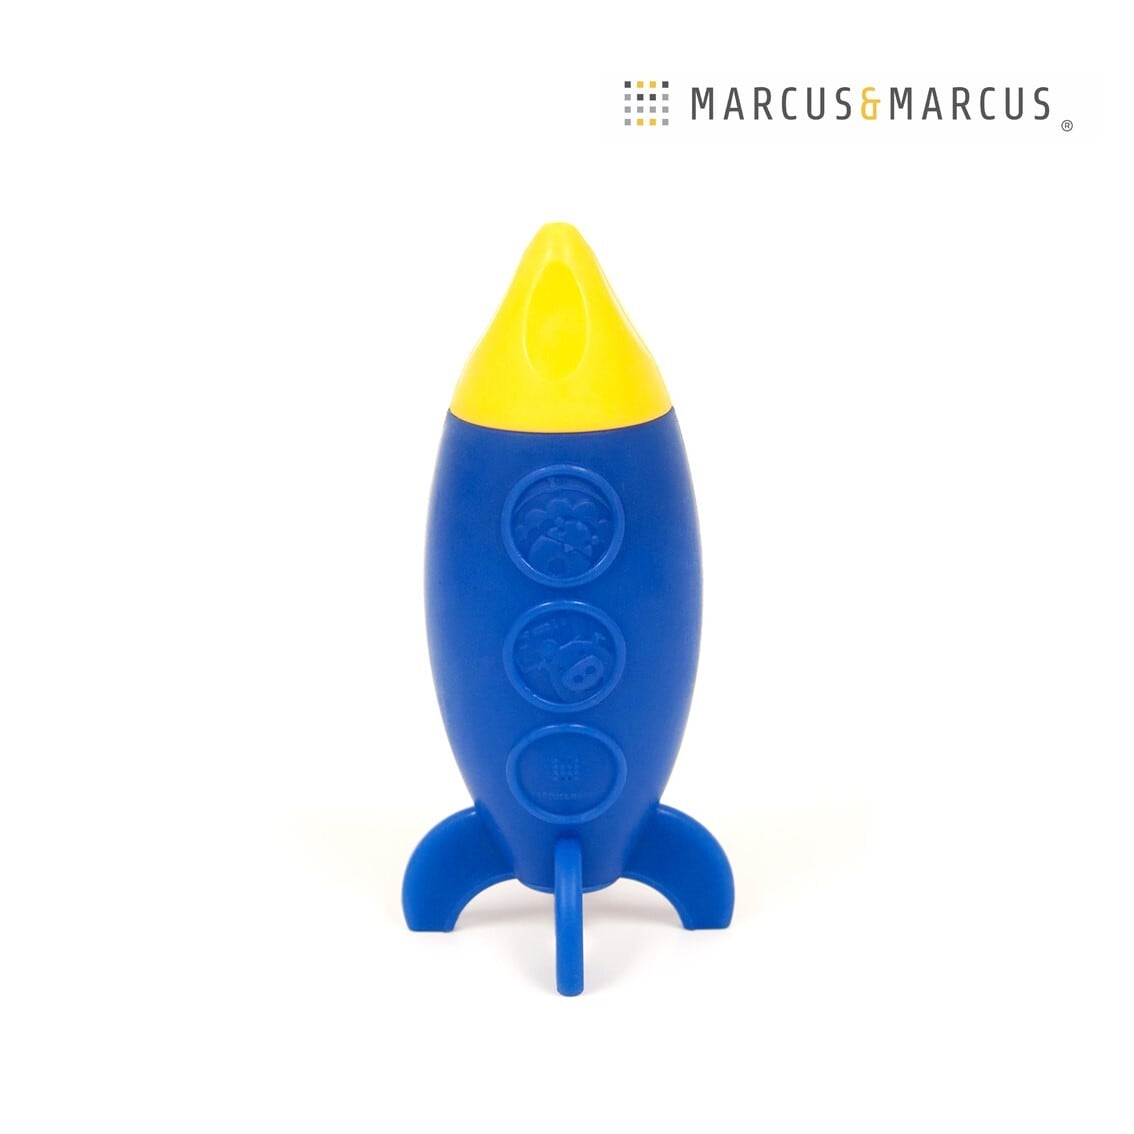 MARCUS&MARCUS / シリコン バストイ スペースロケット